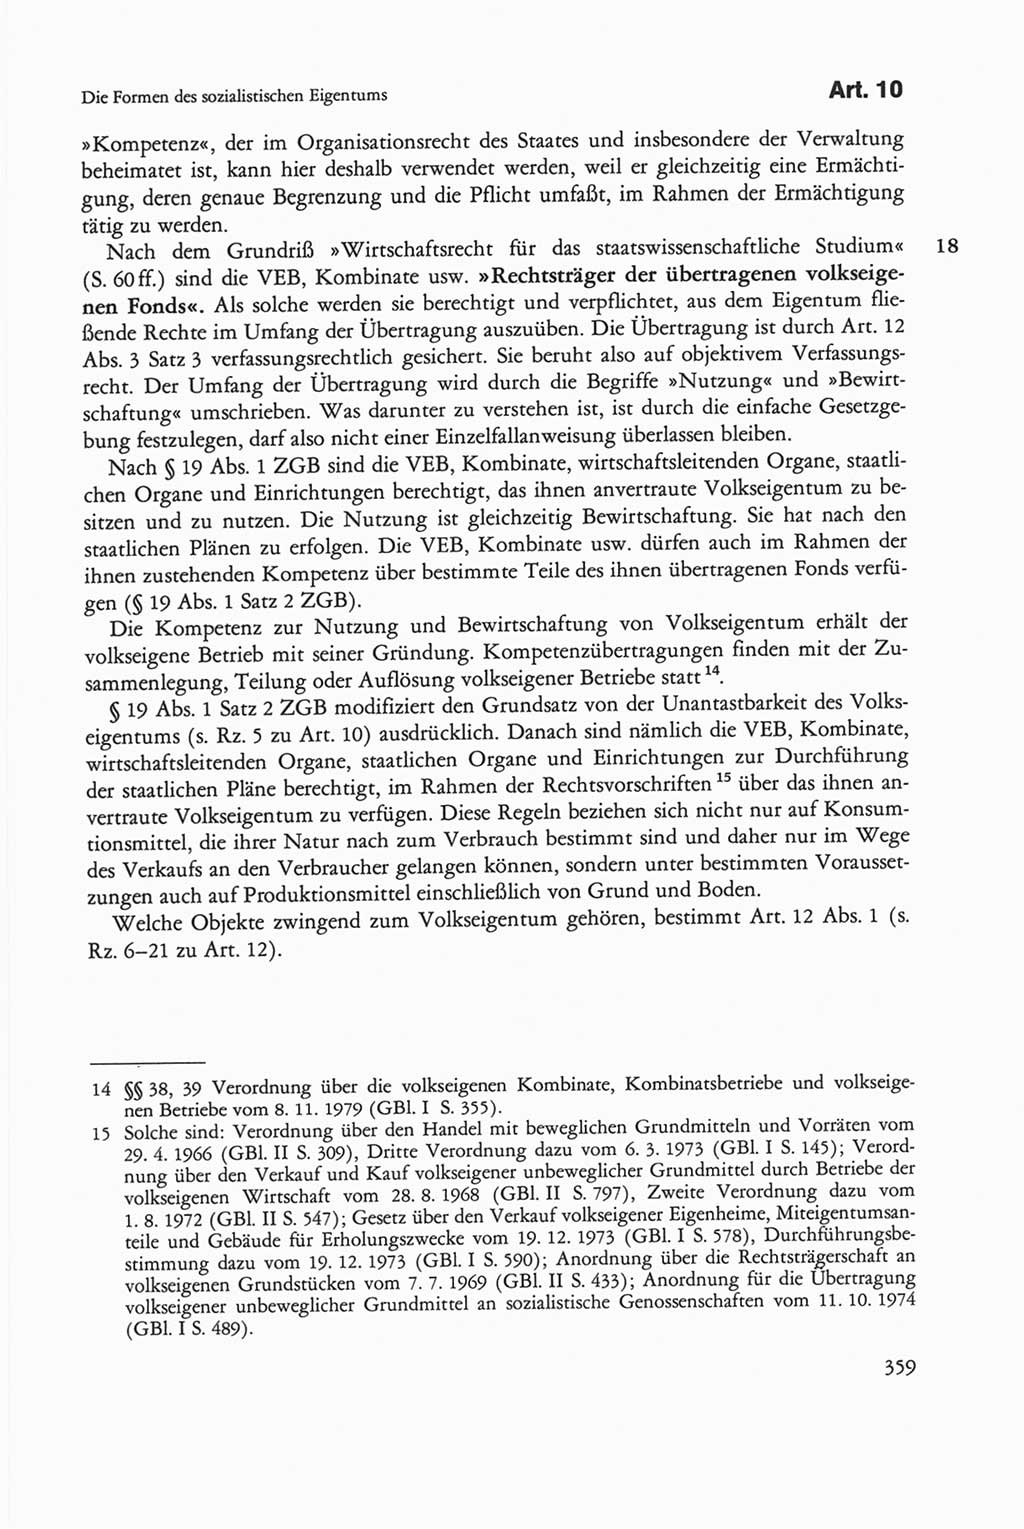 Die sozialistische Verfassung der Deutschen Demokratischen Republik (DDR), Kommentar 1982, Seite 359 (Soz. Verf. DDR Komm. 1982, S. 359)